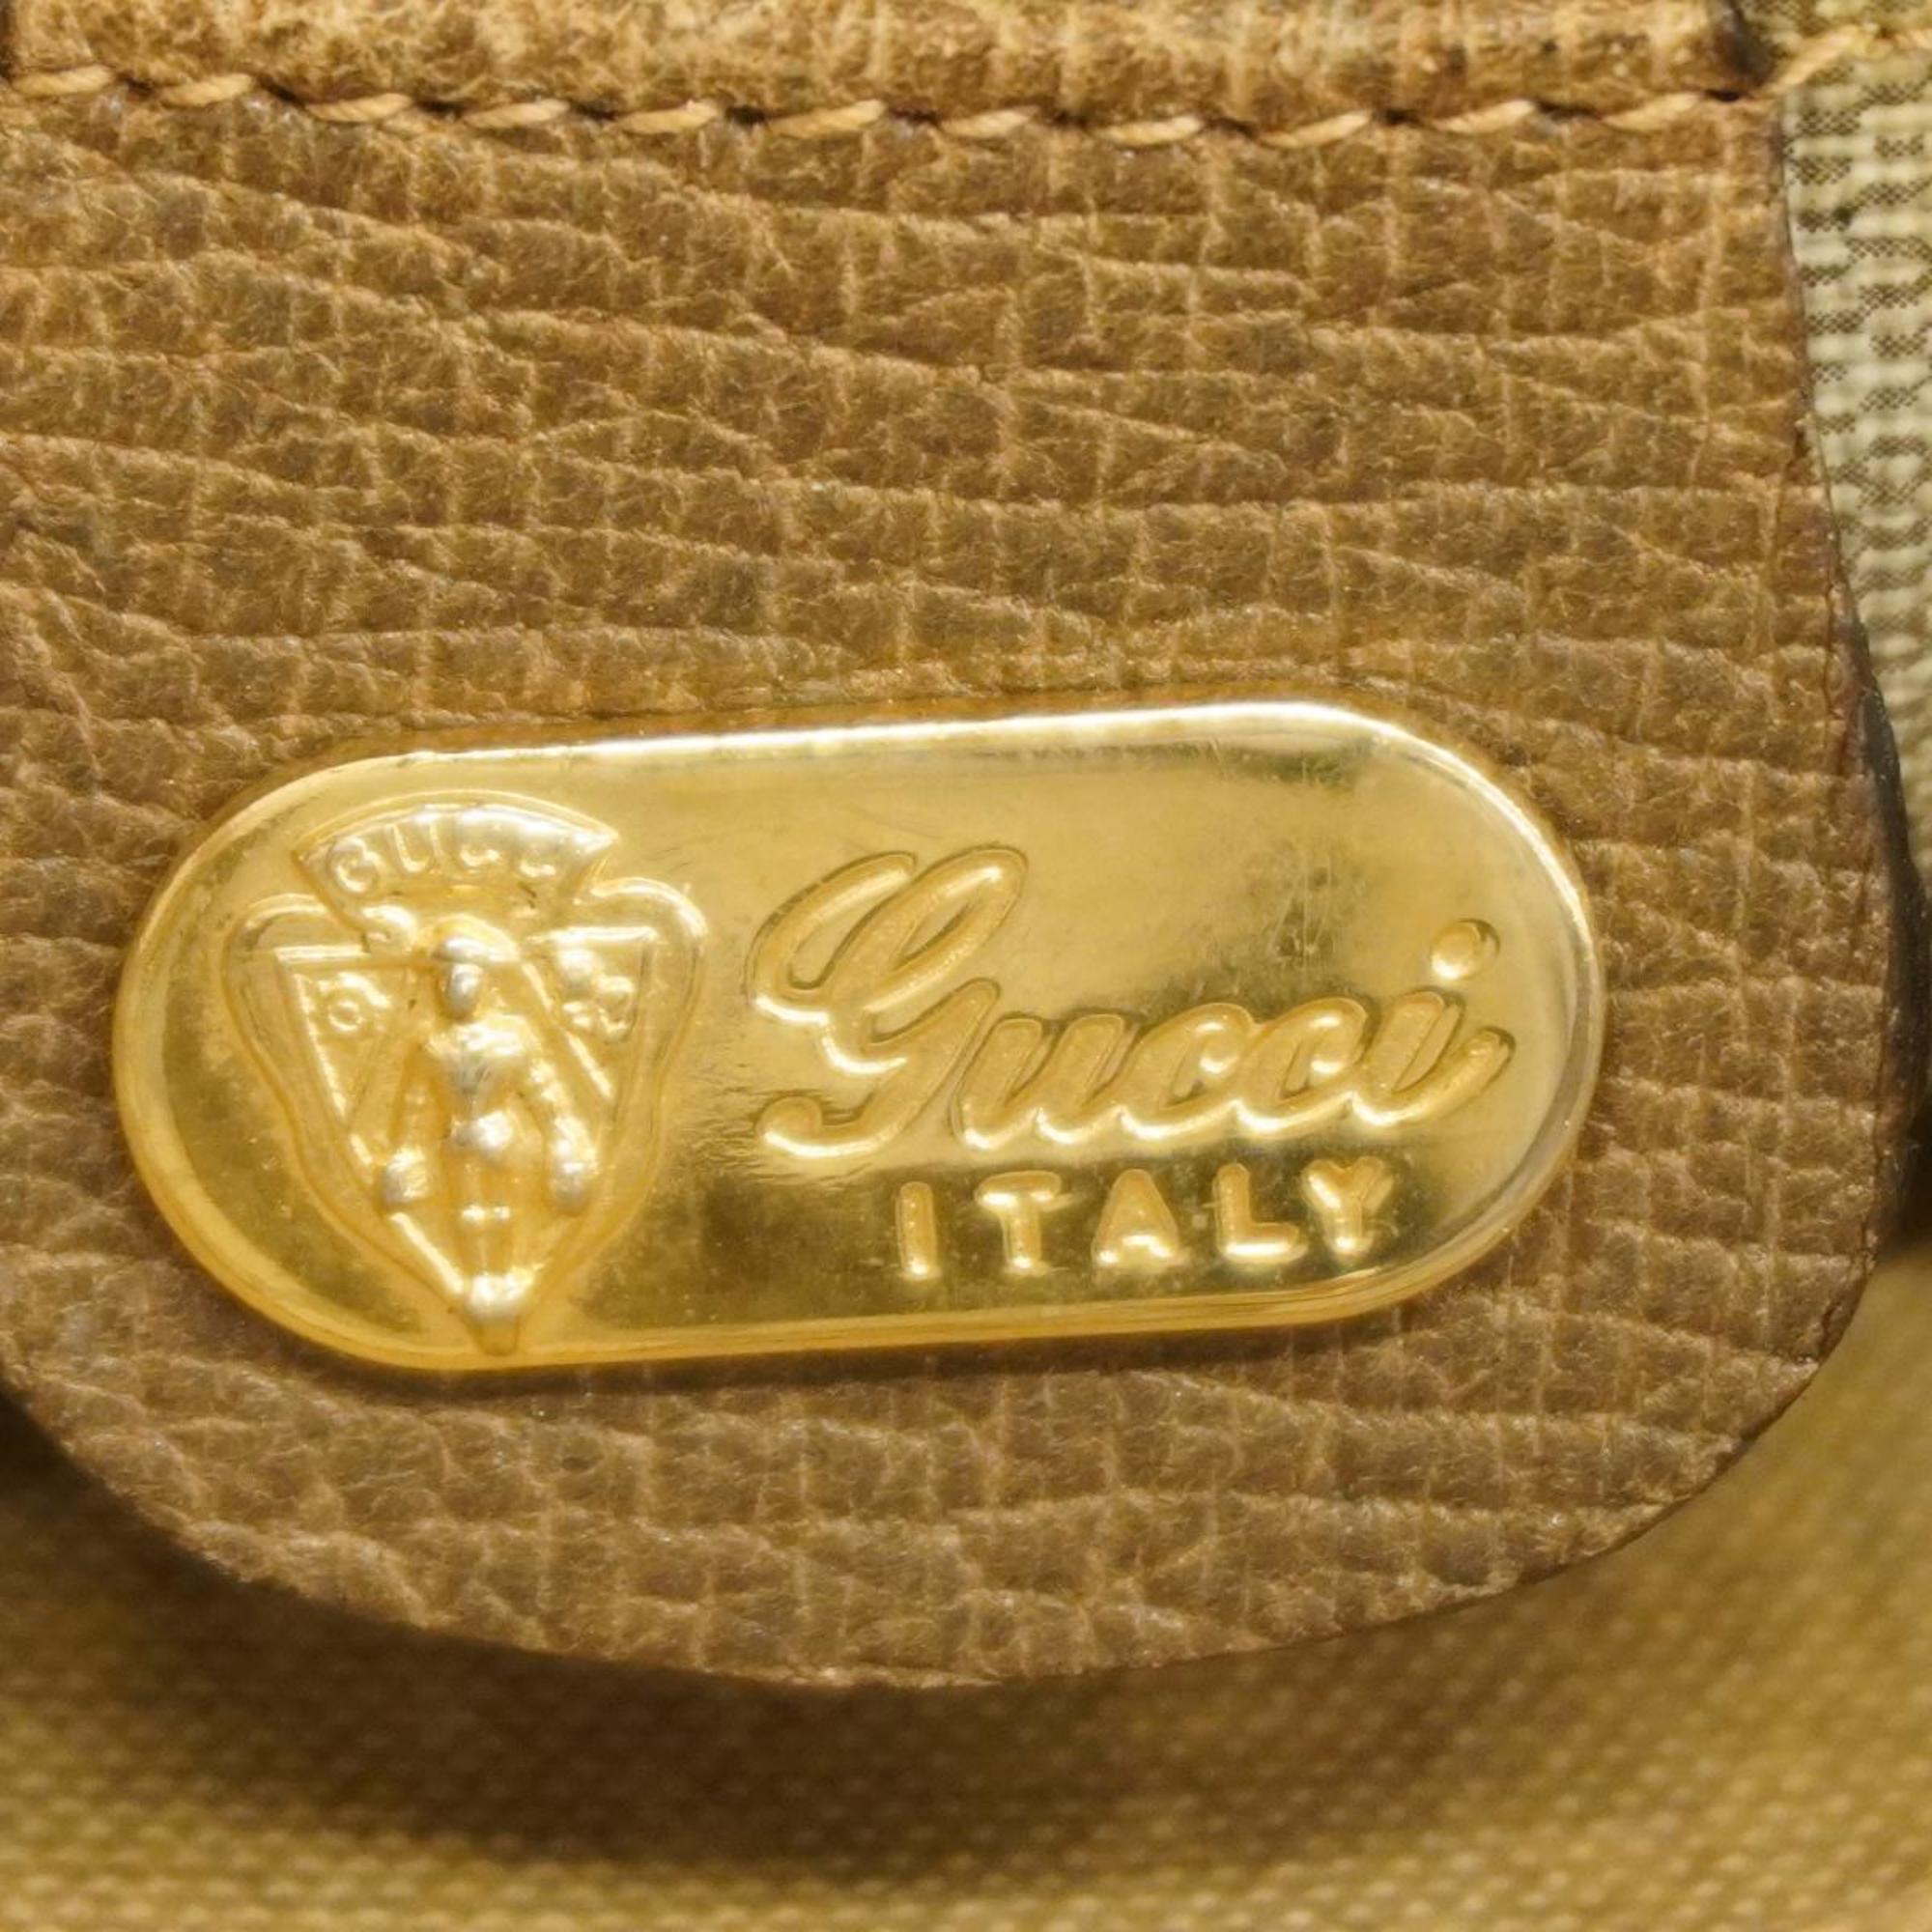 Gucci Tote Bag GG Supreme 002 103 1301 Leather Brown Women's